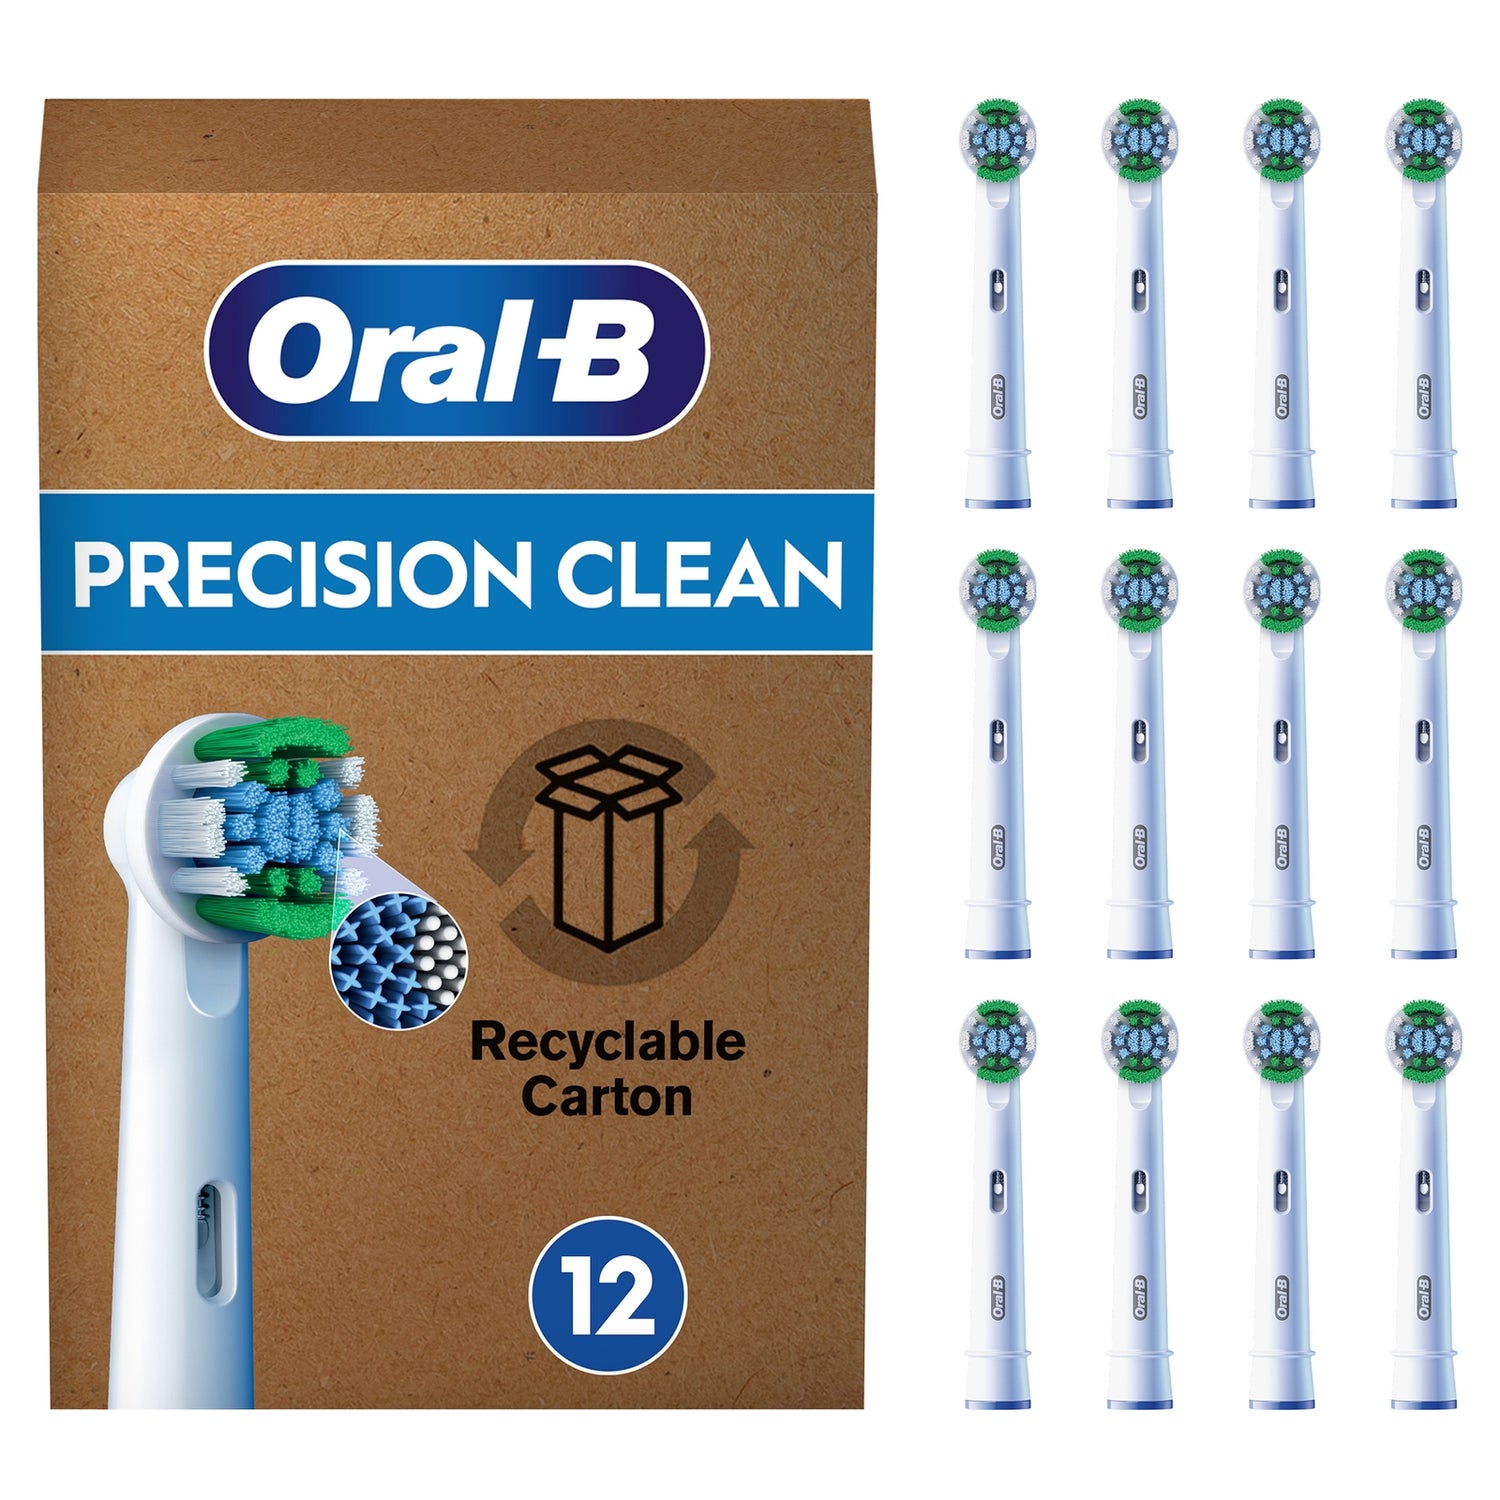 Oral-B Pro Precision X-förmige Aufsteckbürsten Stück briefkastenfähige Verpackung, | Borsten, für Clean Oral-B Zahnbürste, elektrische DE 12